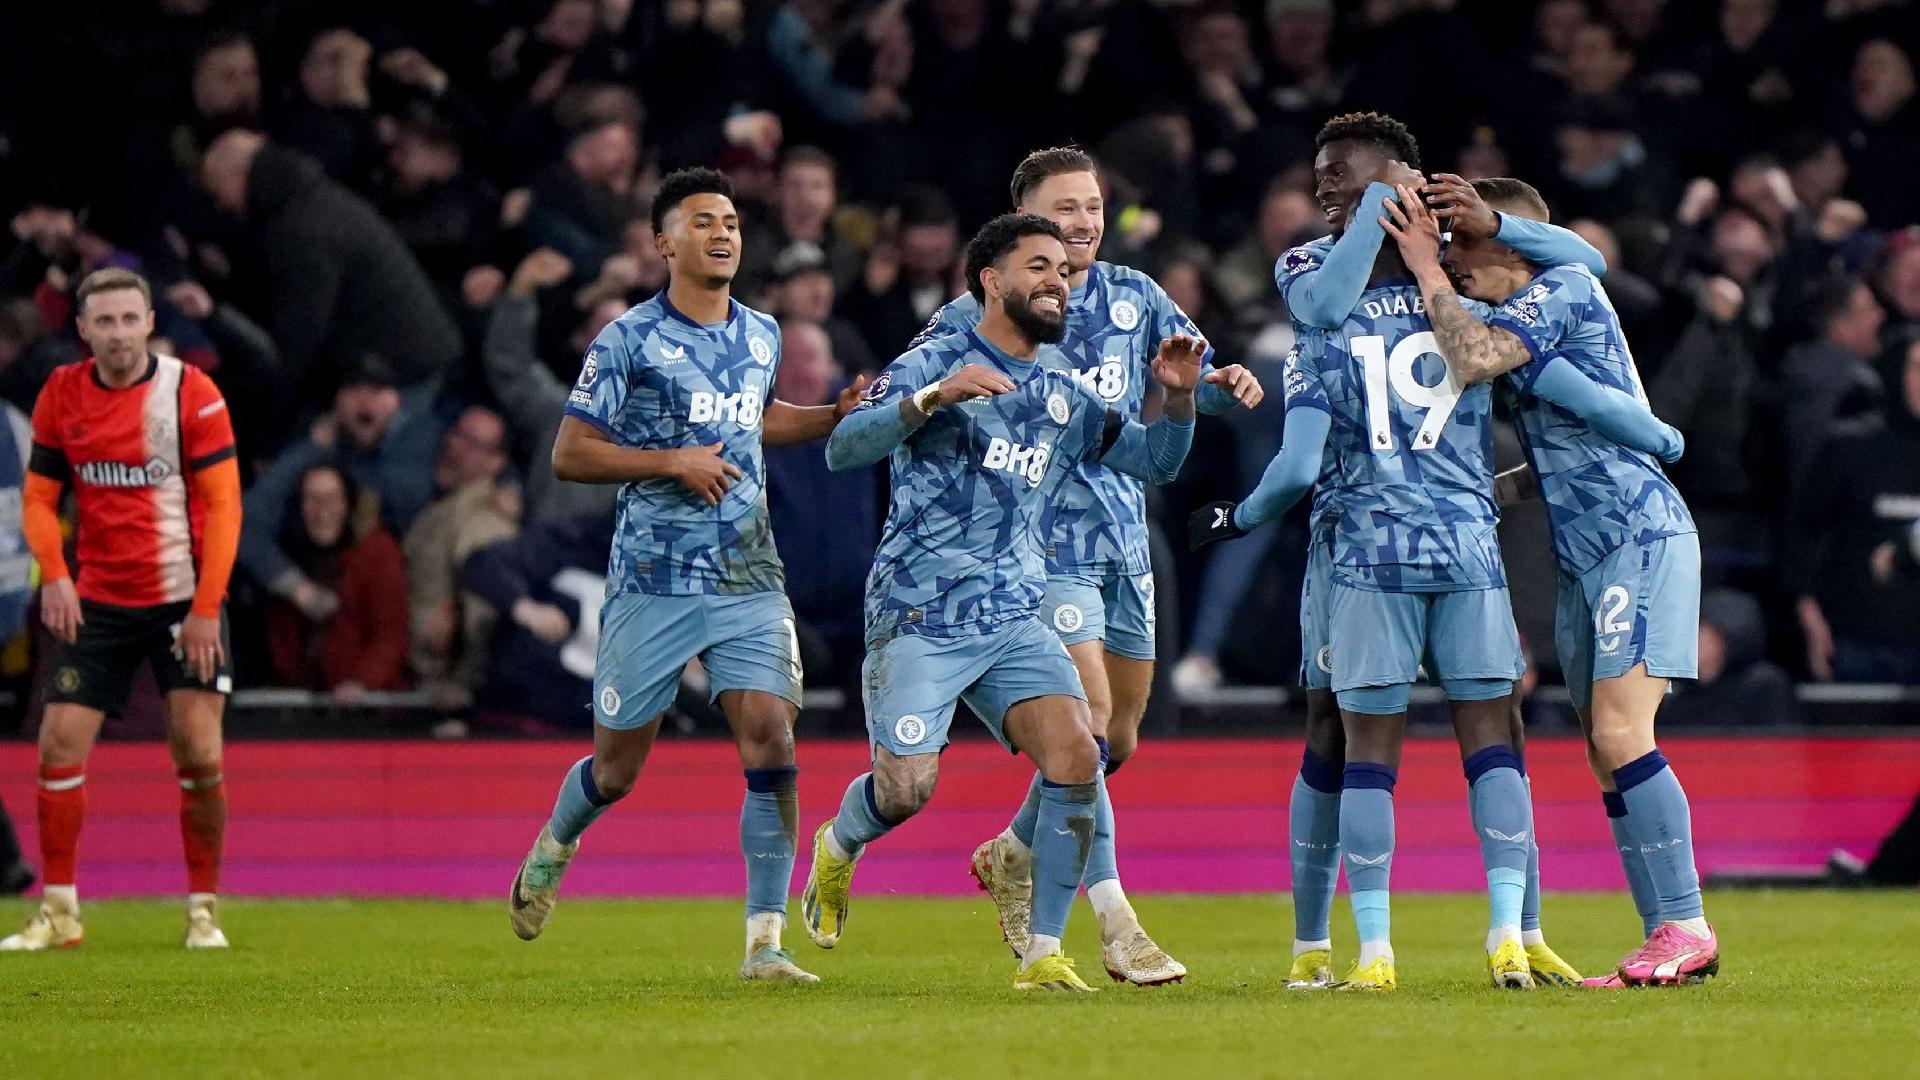 Late Lucas Digne goal sees Aston Villa snatch win over battling Luton